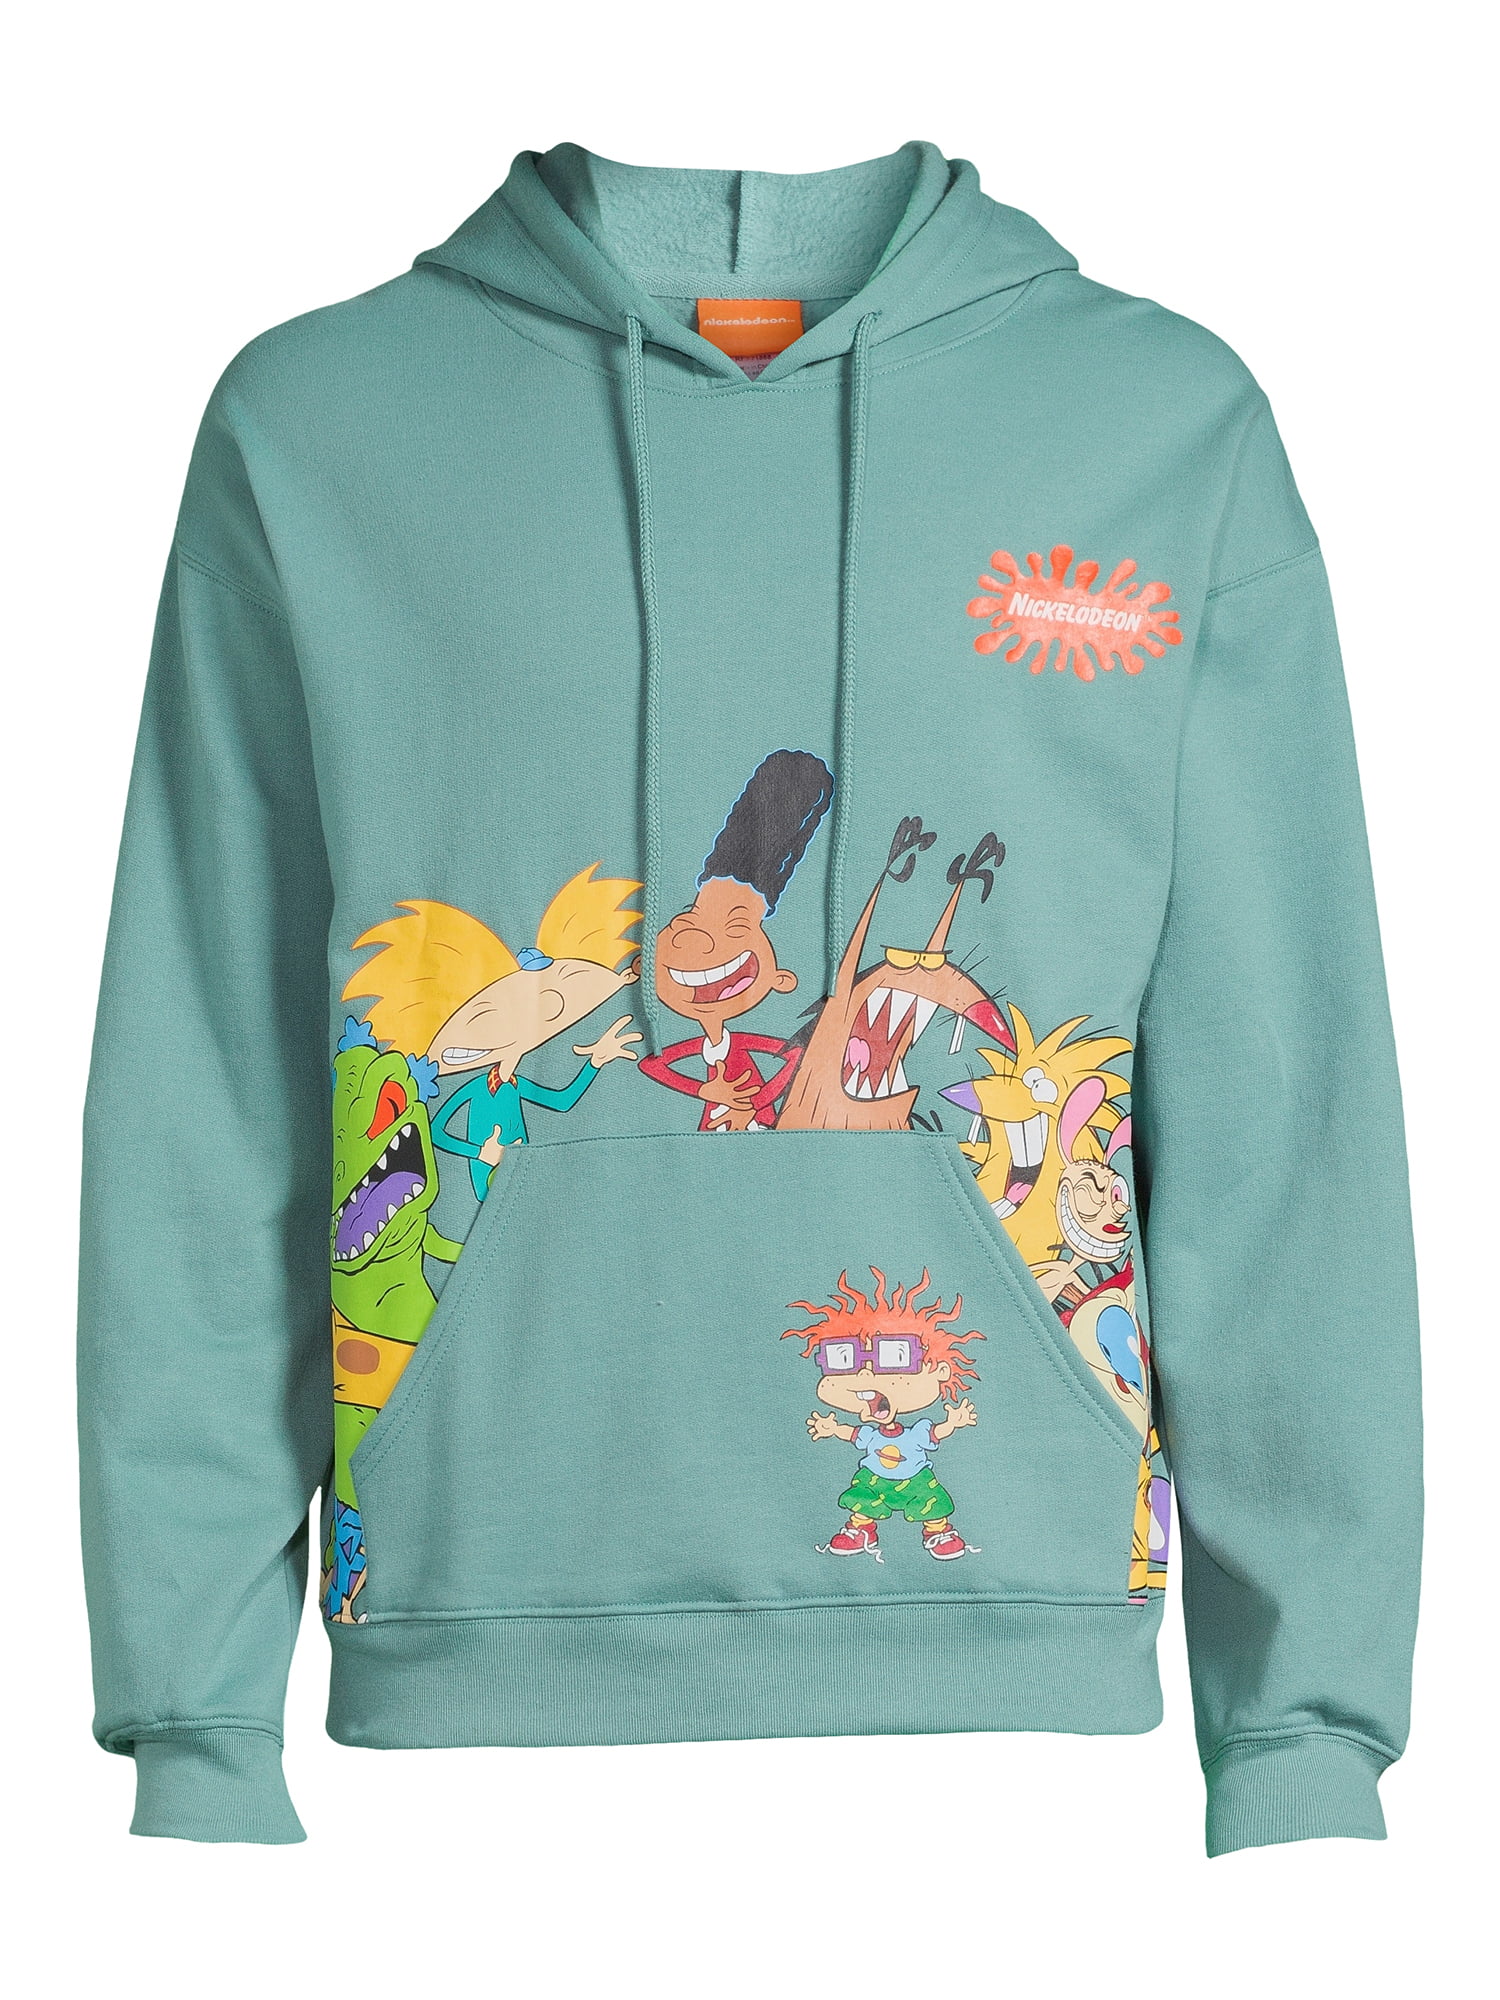 Nickelodeon Men's Cast Mash Up Graphic Hoodie Sweatshirt, Sizes S